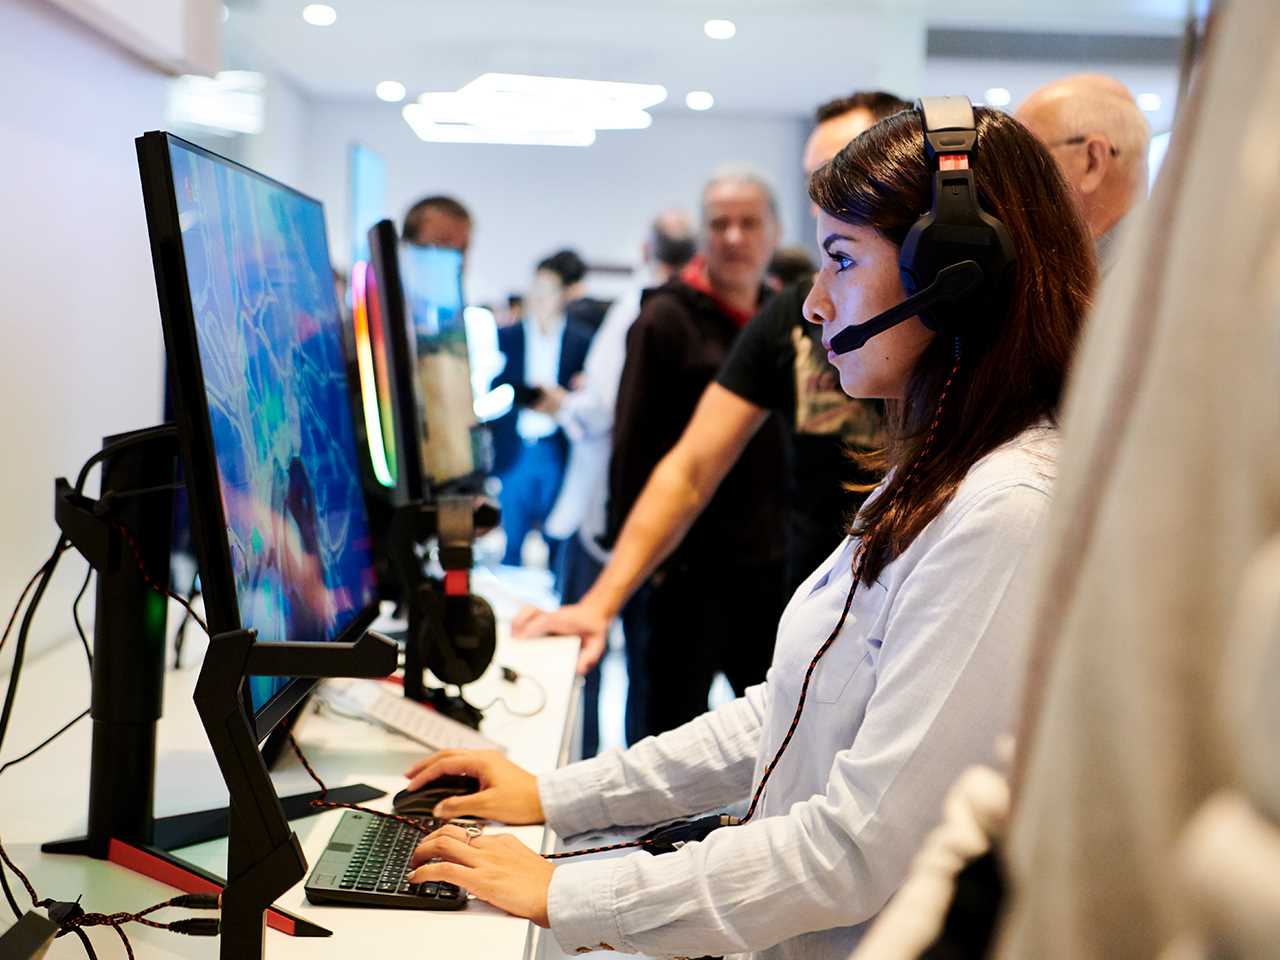 IFA 2018: женщина играет в видеоигры на мониторе LG 27GK750F в секции видеоигры на выставке